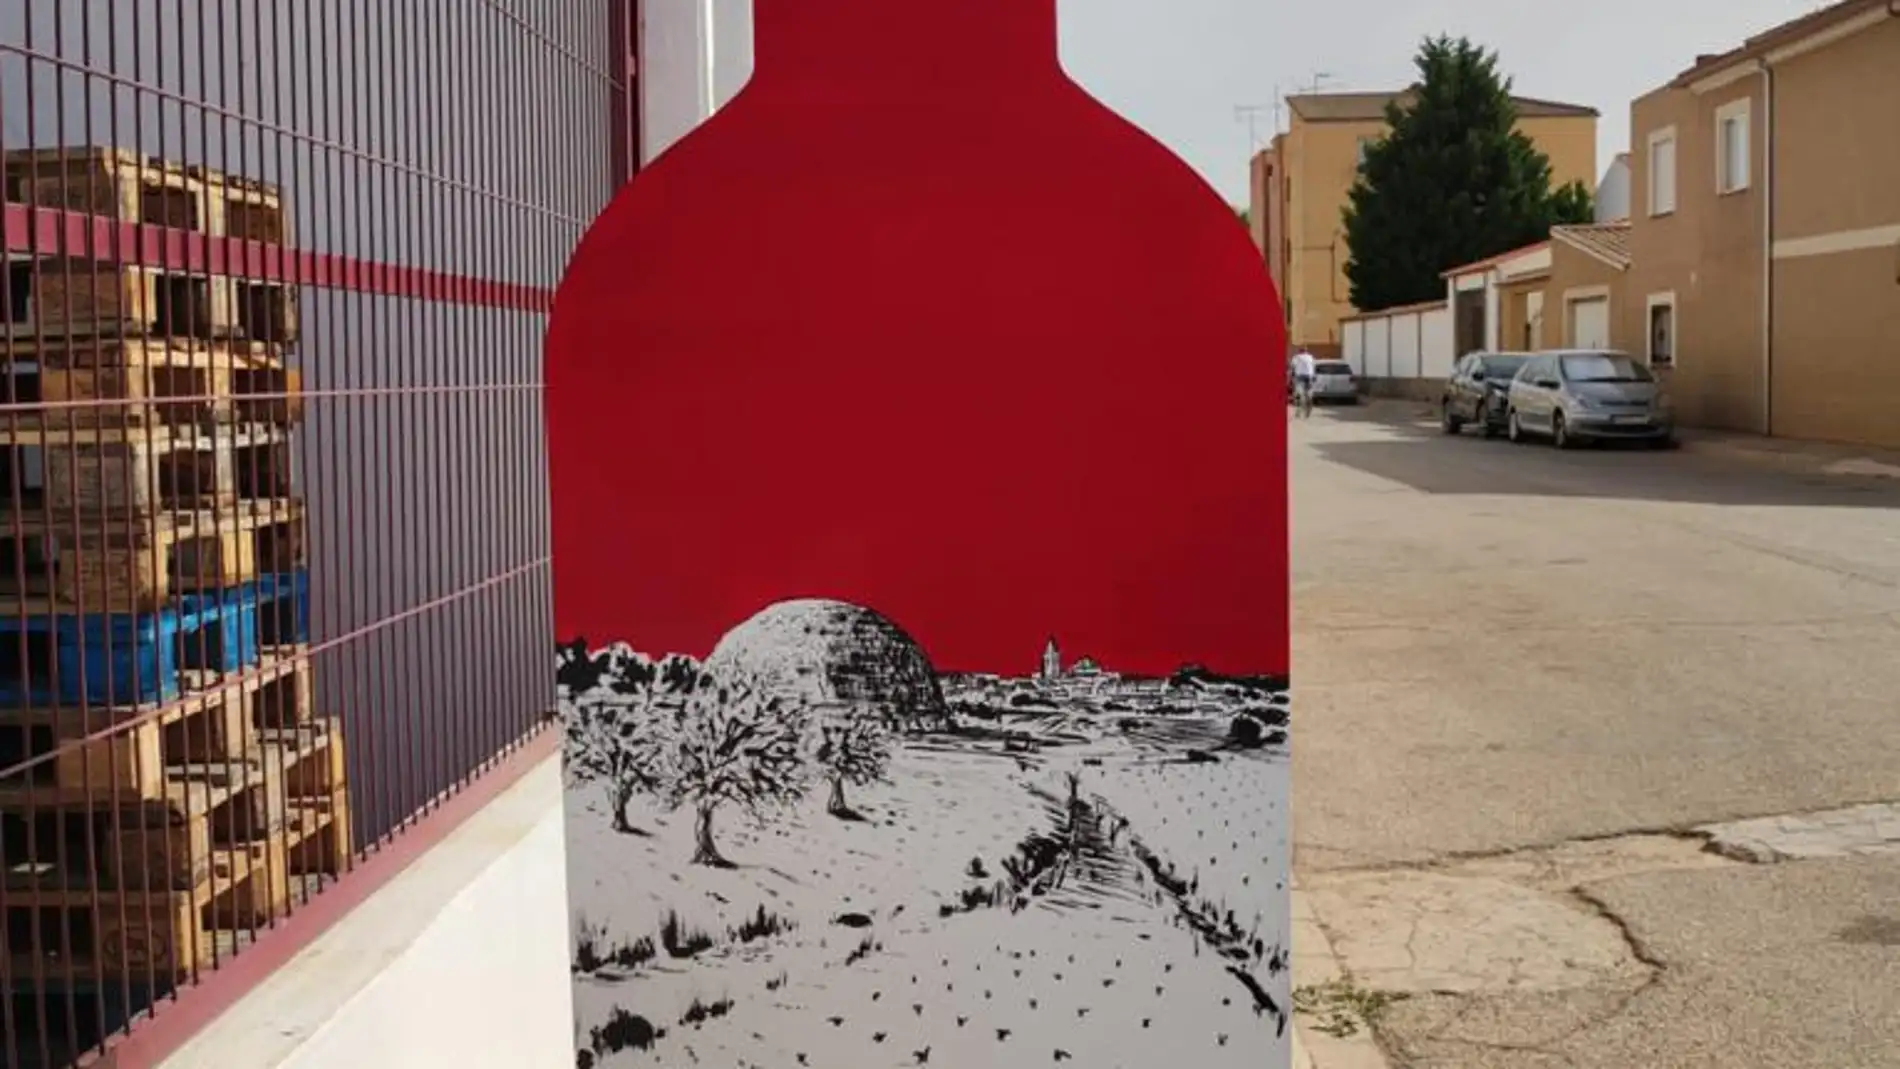 Éxito en las calles de Alpera con el arte urbano